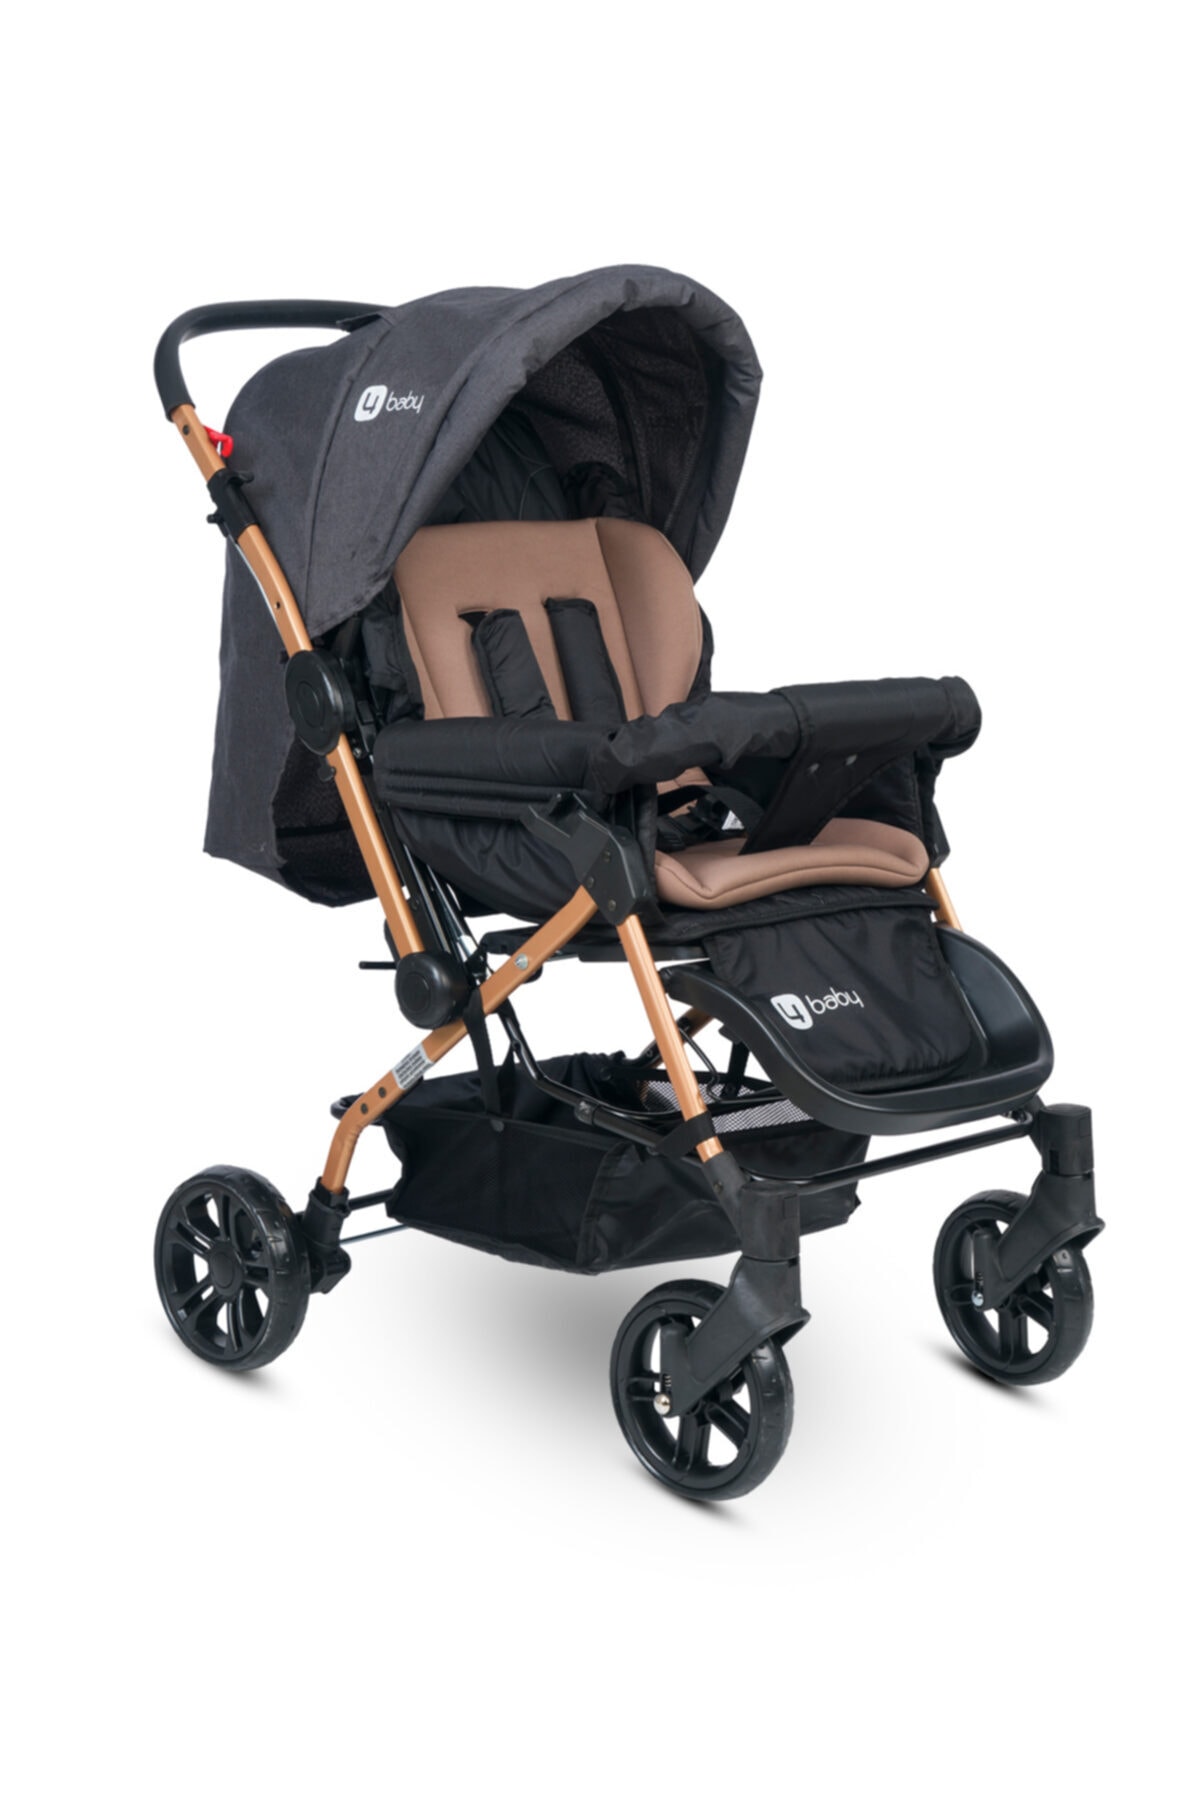 4 Baby Olympus Gold-Antrasit Travel Sistem Bebek Arabası Seyahat Sistem Çift Yön Puset Taşıma Koltuğu NE11961